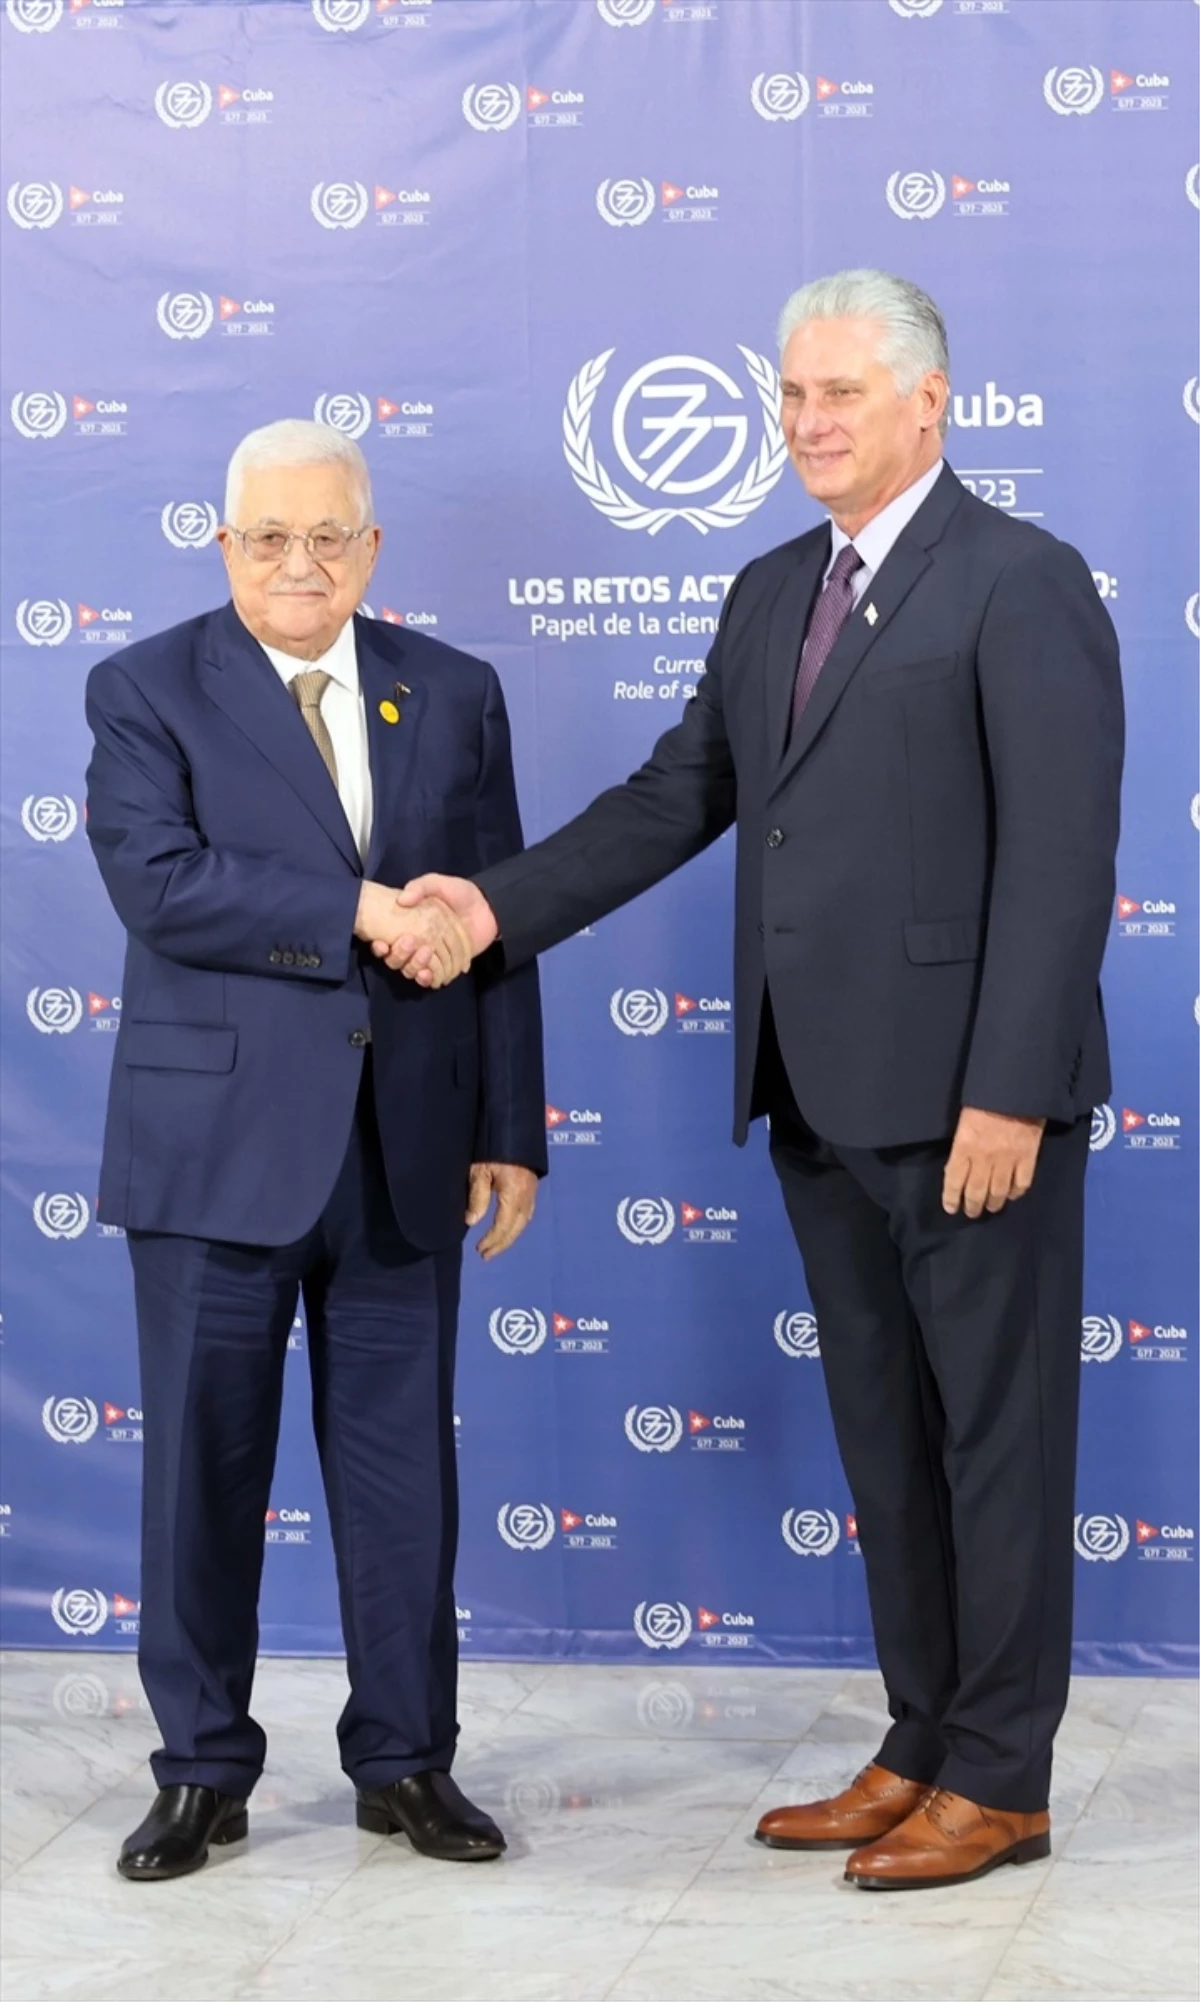 Filistin Devlet Başkanı Abbas, Küba Devlet Başkanı Diaz-Canel ile Filistin meselesini görüştü